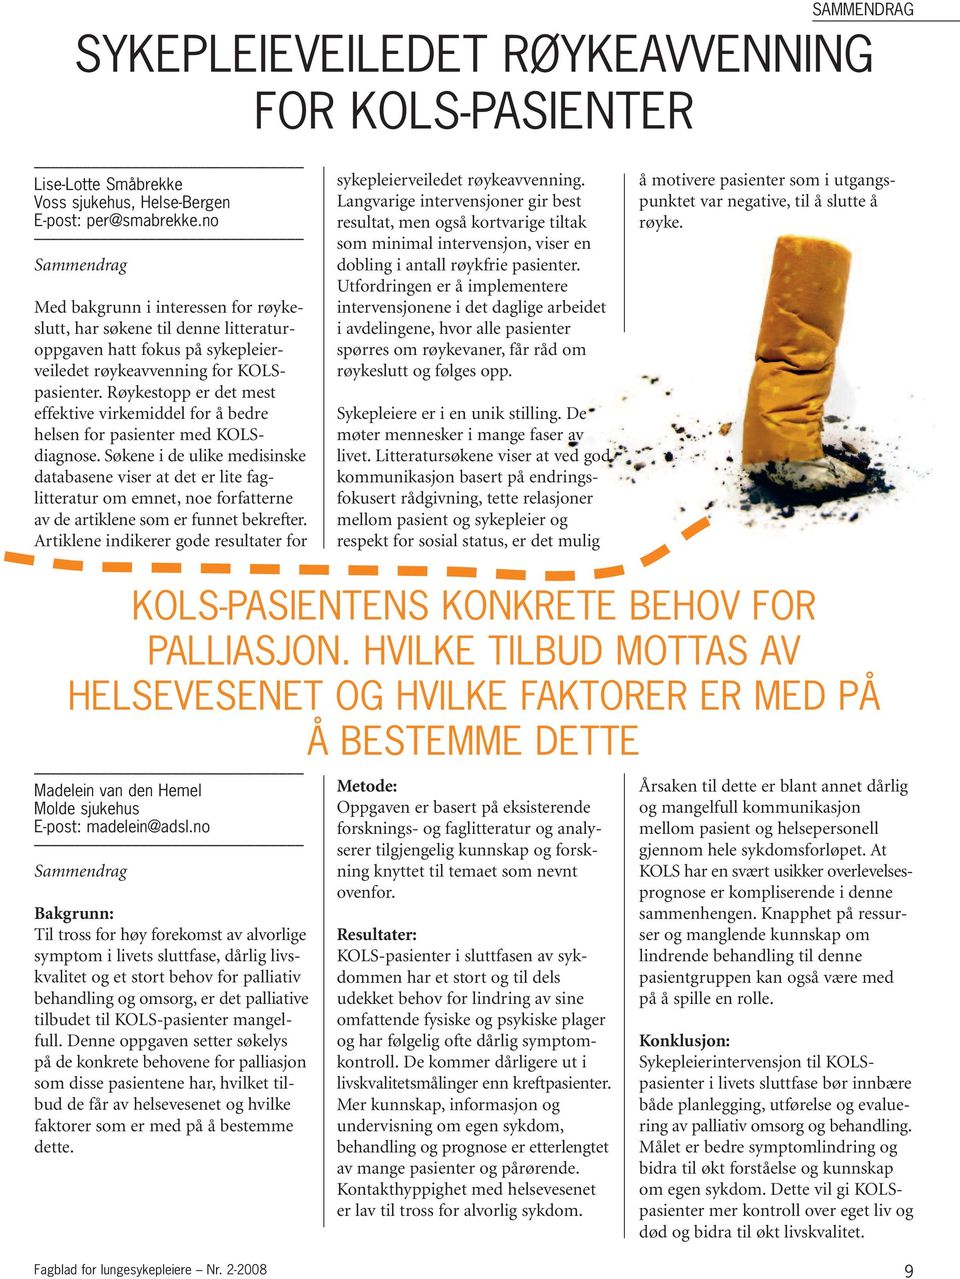 Røykestopp er det mest effektive virkemiddel for å bedre helsen for pasienter med KOLSdiagnose.